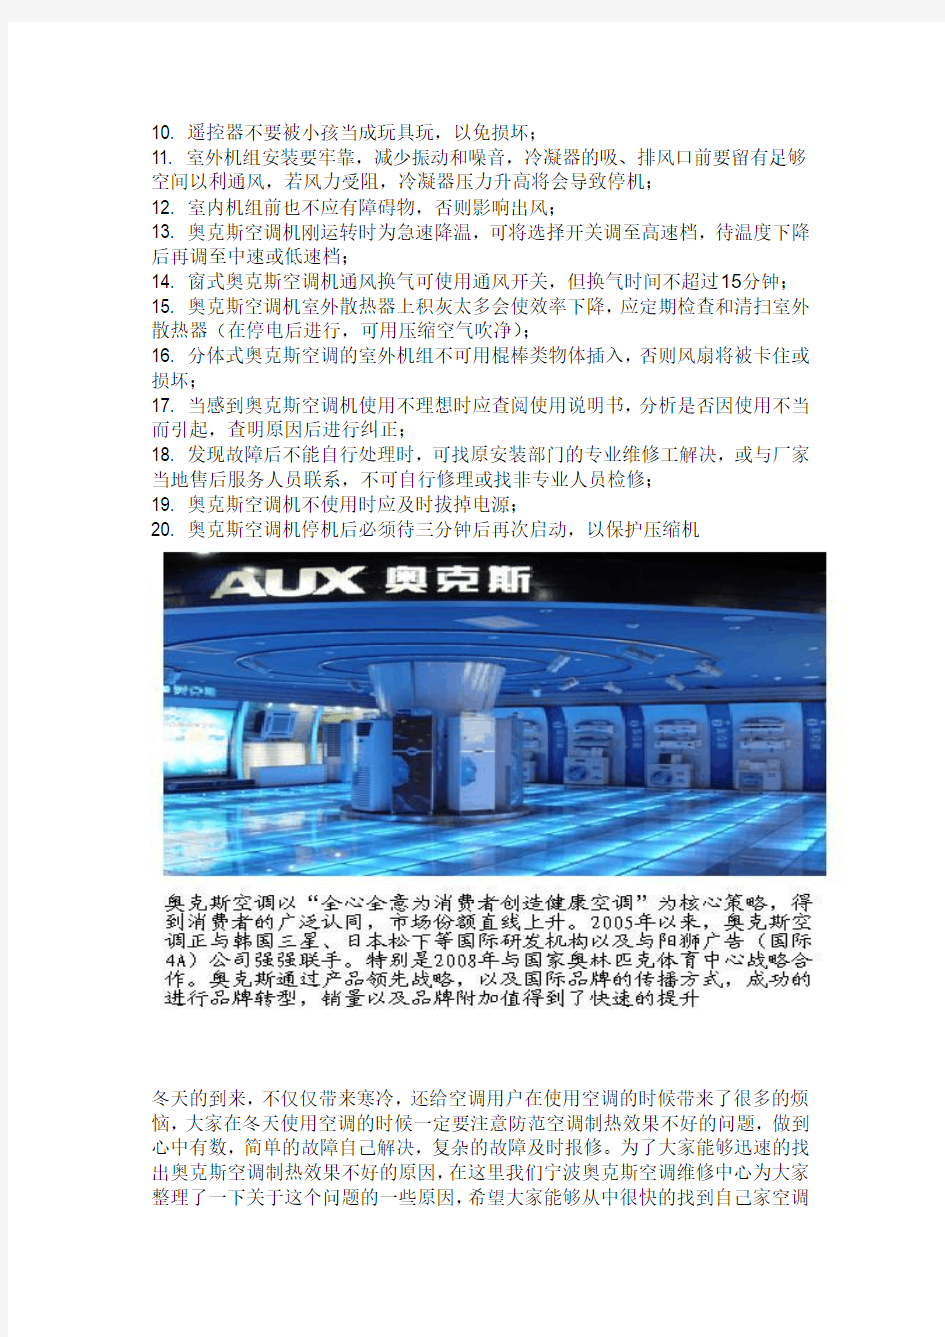 南京奥克斯空调售后服务电话(AUX)诚信维修是服务的宗旨